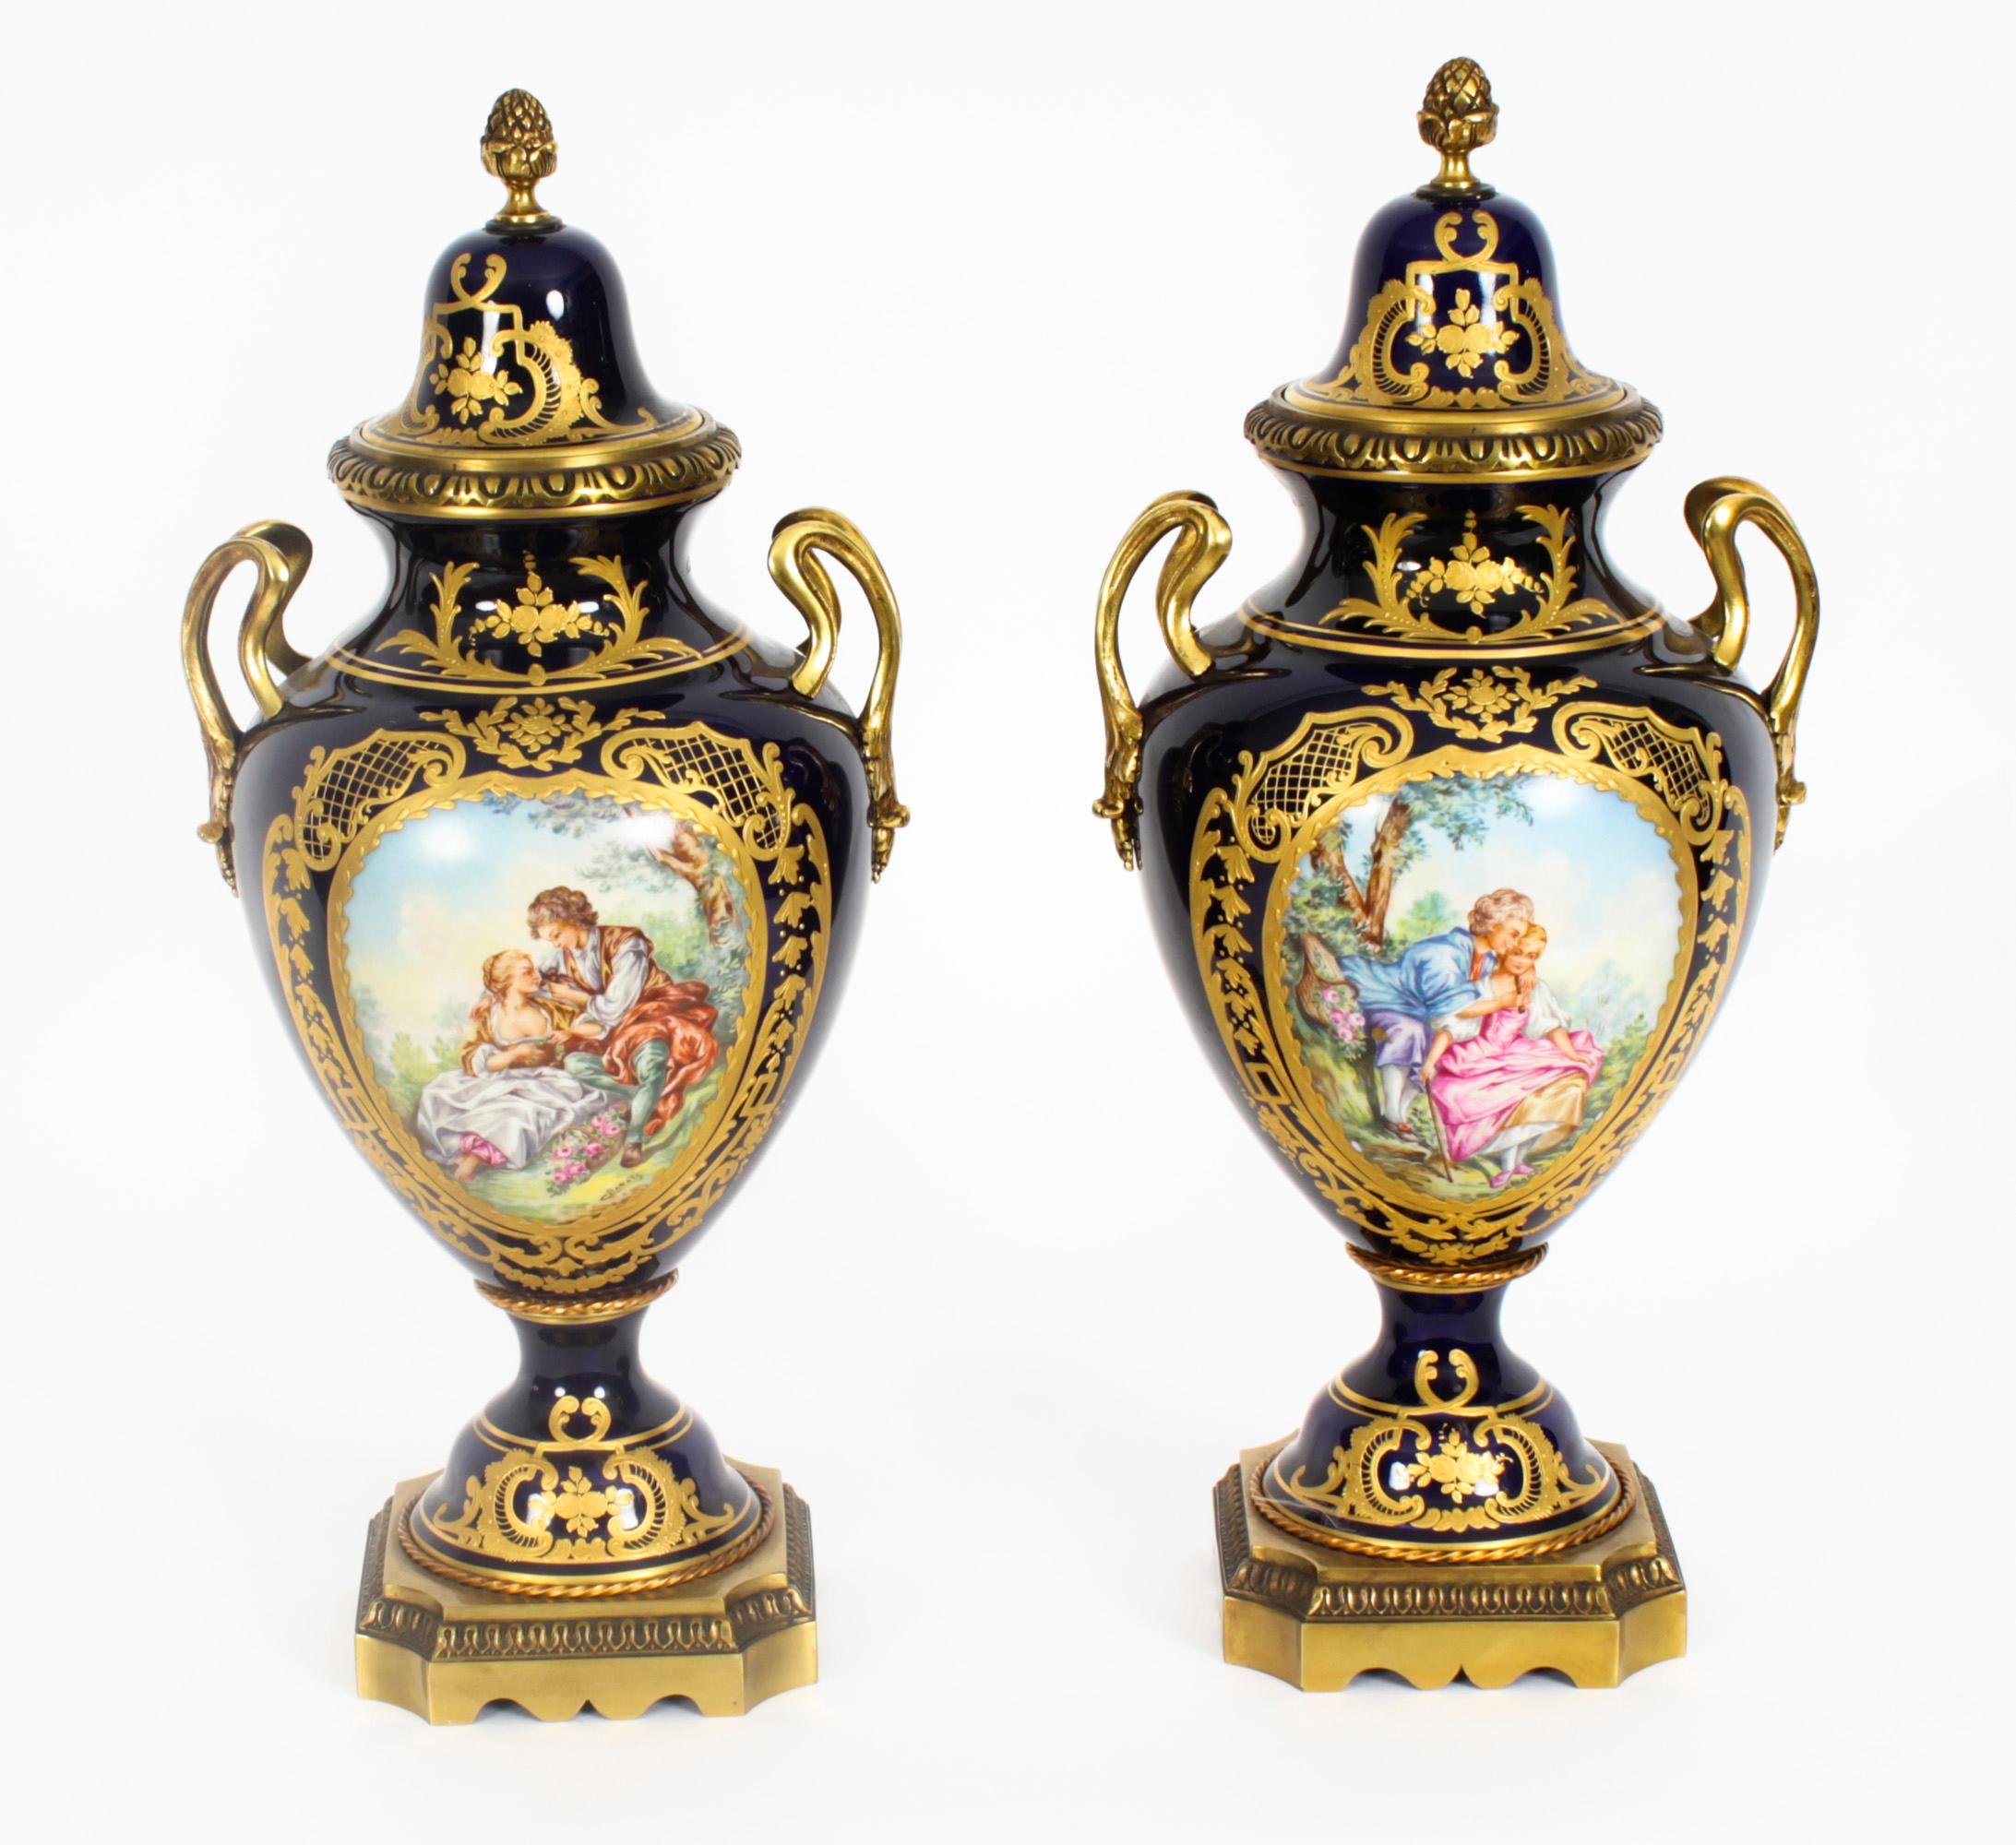 Une belle et monumentale garniture de trois pièces en porcelaine de Paris montée en bronze doré avec des scènes peintes à la main et une délicate décoration dorée, datant d'environ 1900. 
 
L'ensemble comprend une paire de vases à couvercle et un